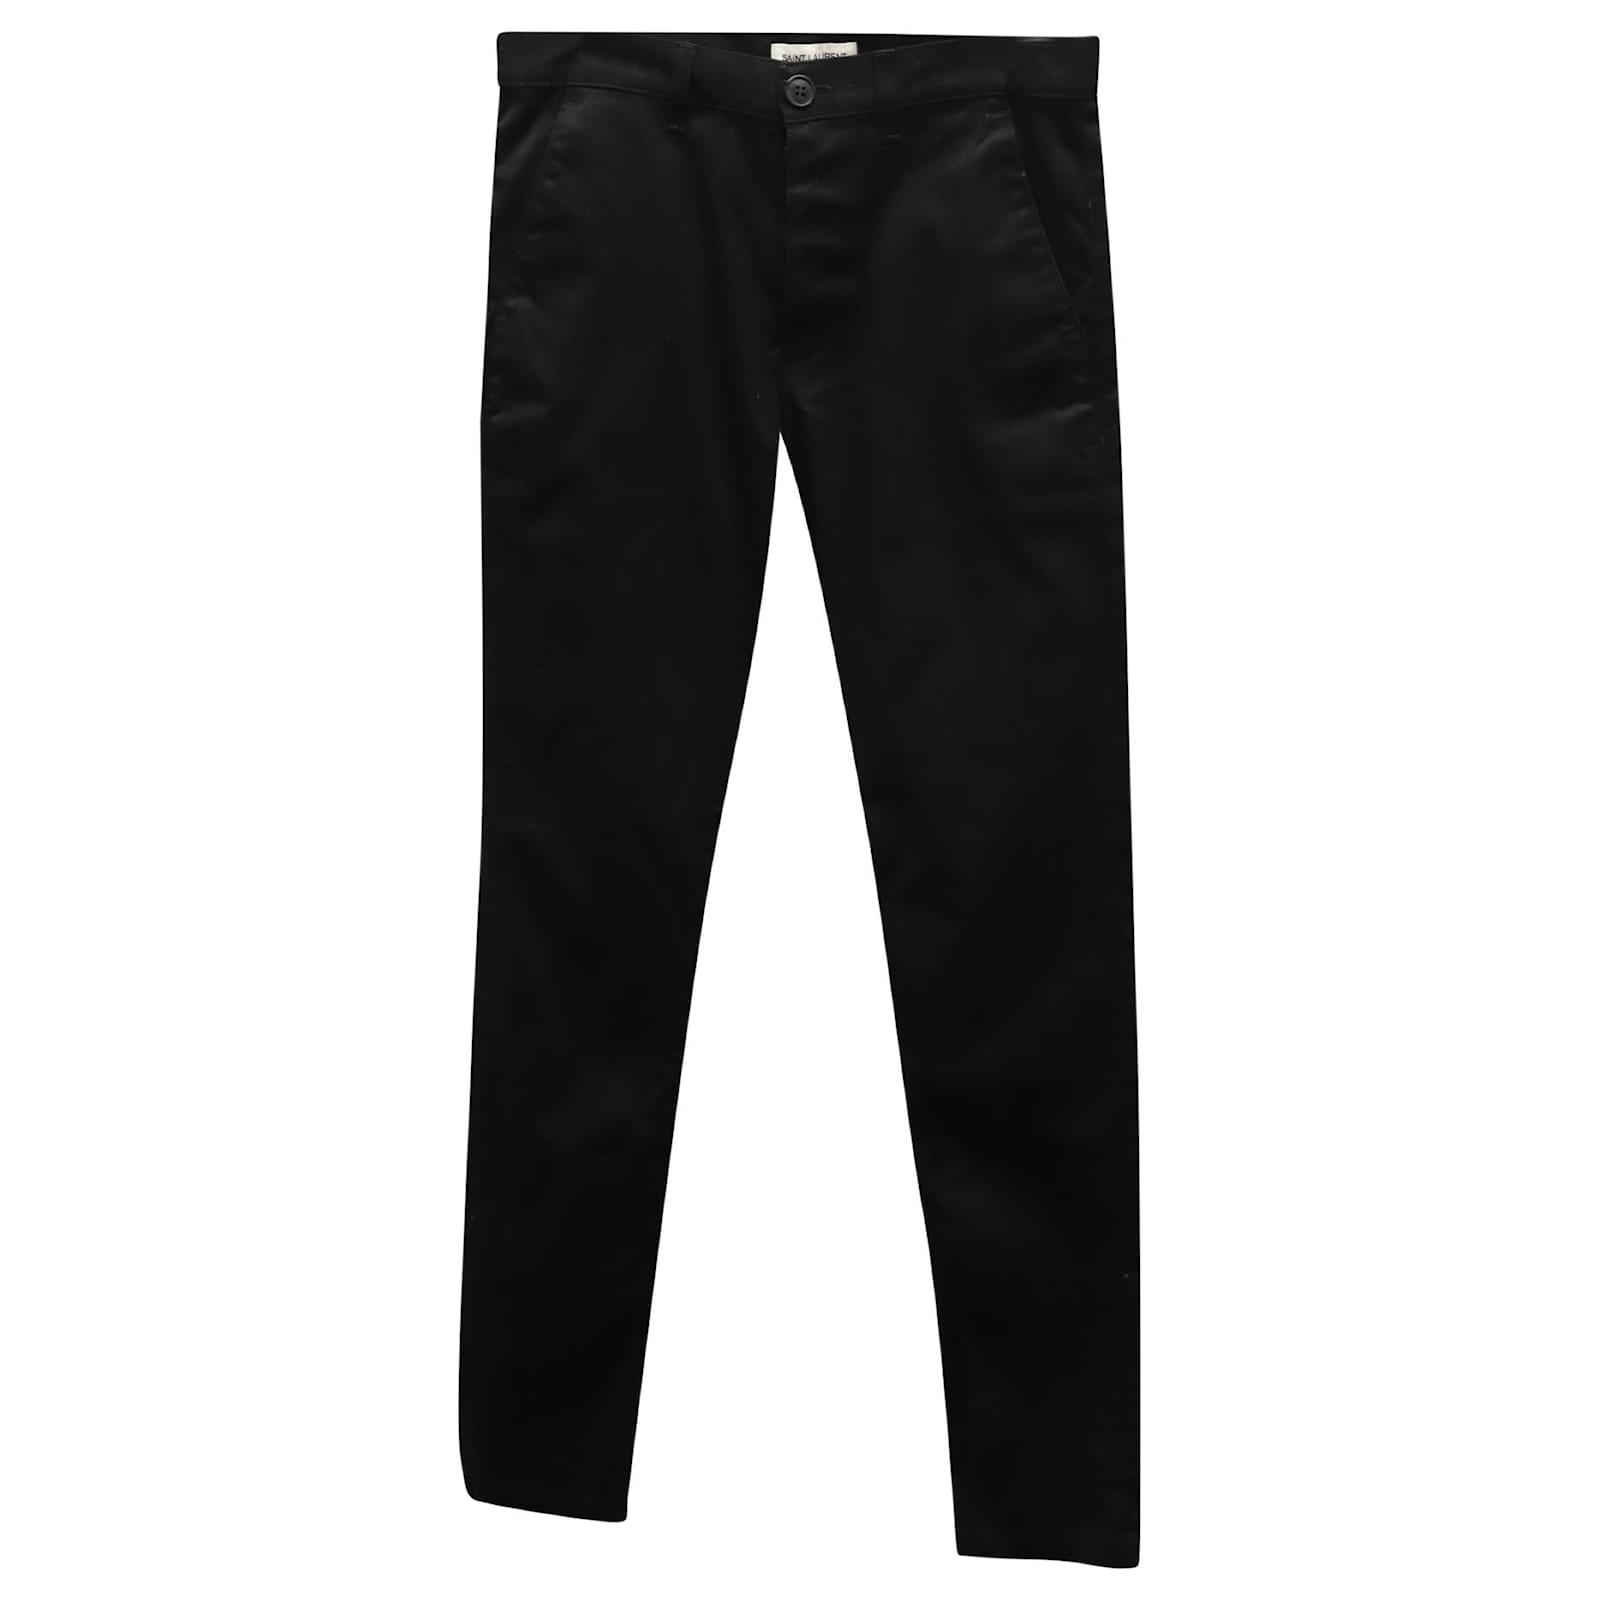 Buy Men Black Solid Ultra Slim Fit Trousers Online - 736290 | Van Heusen